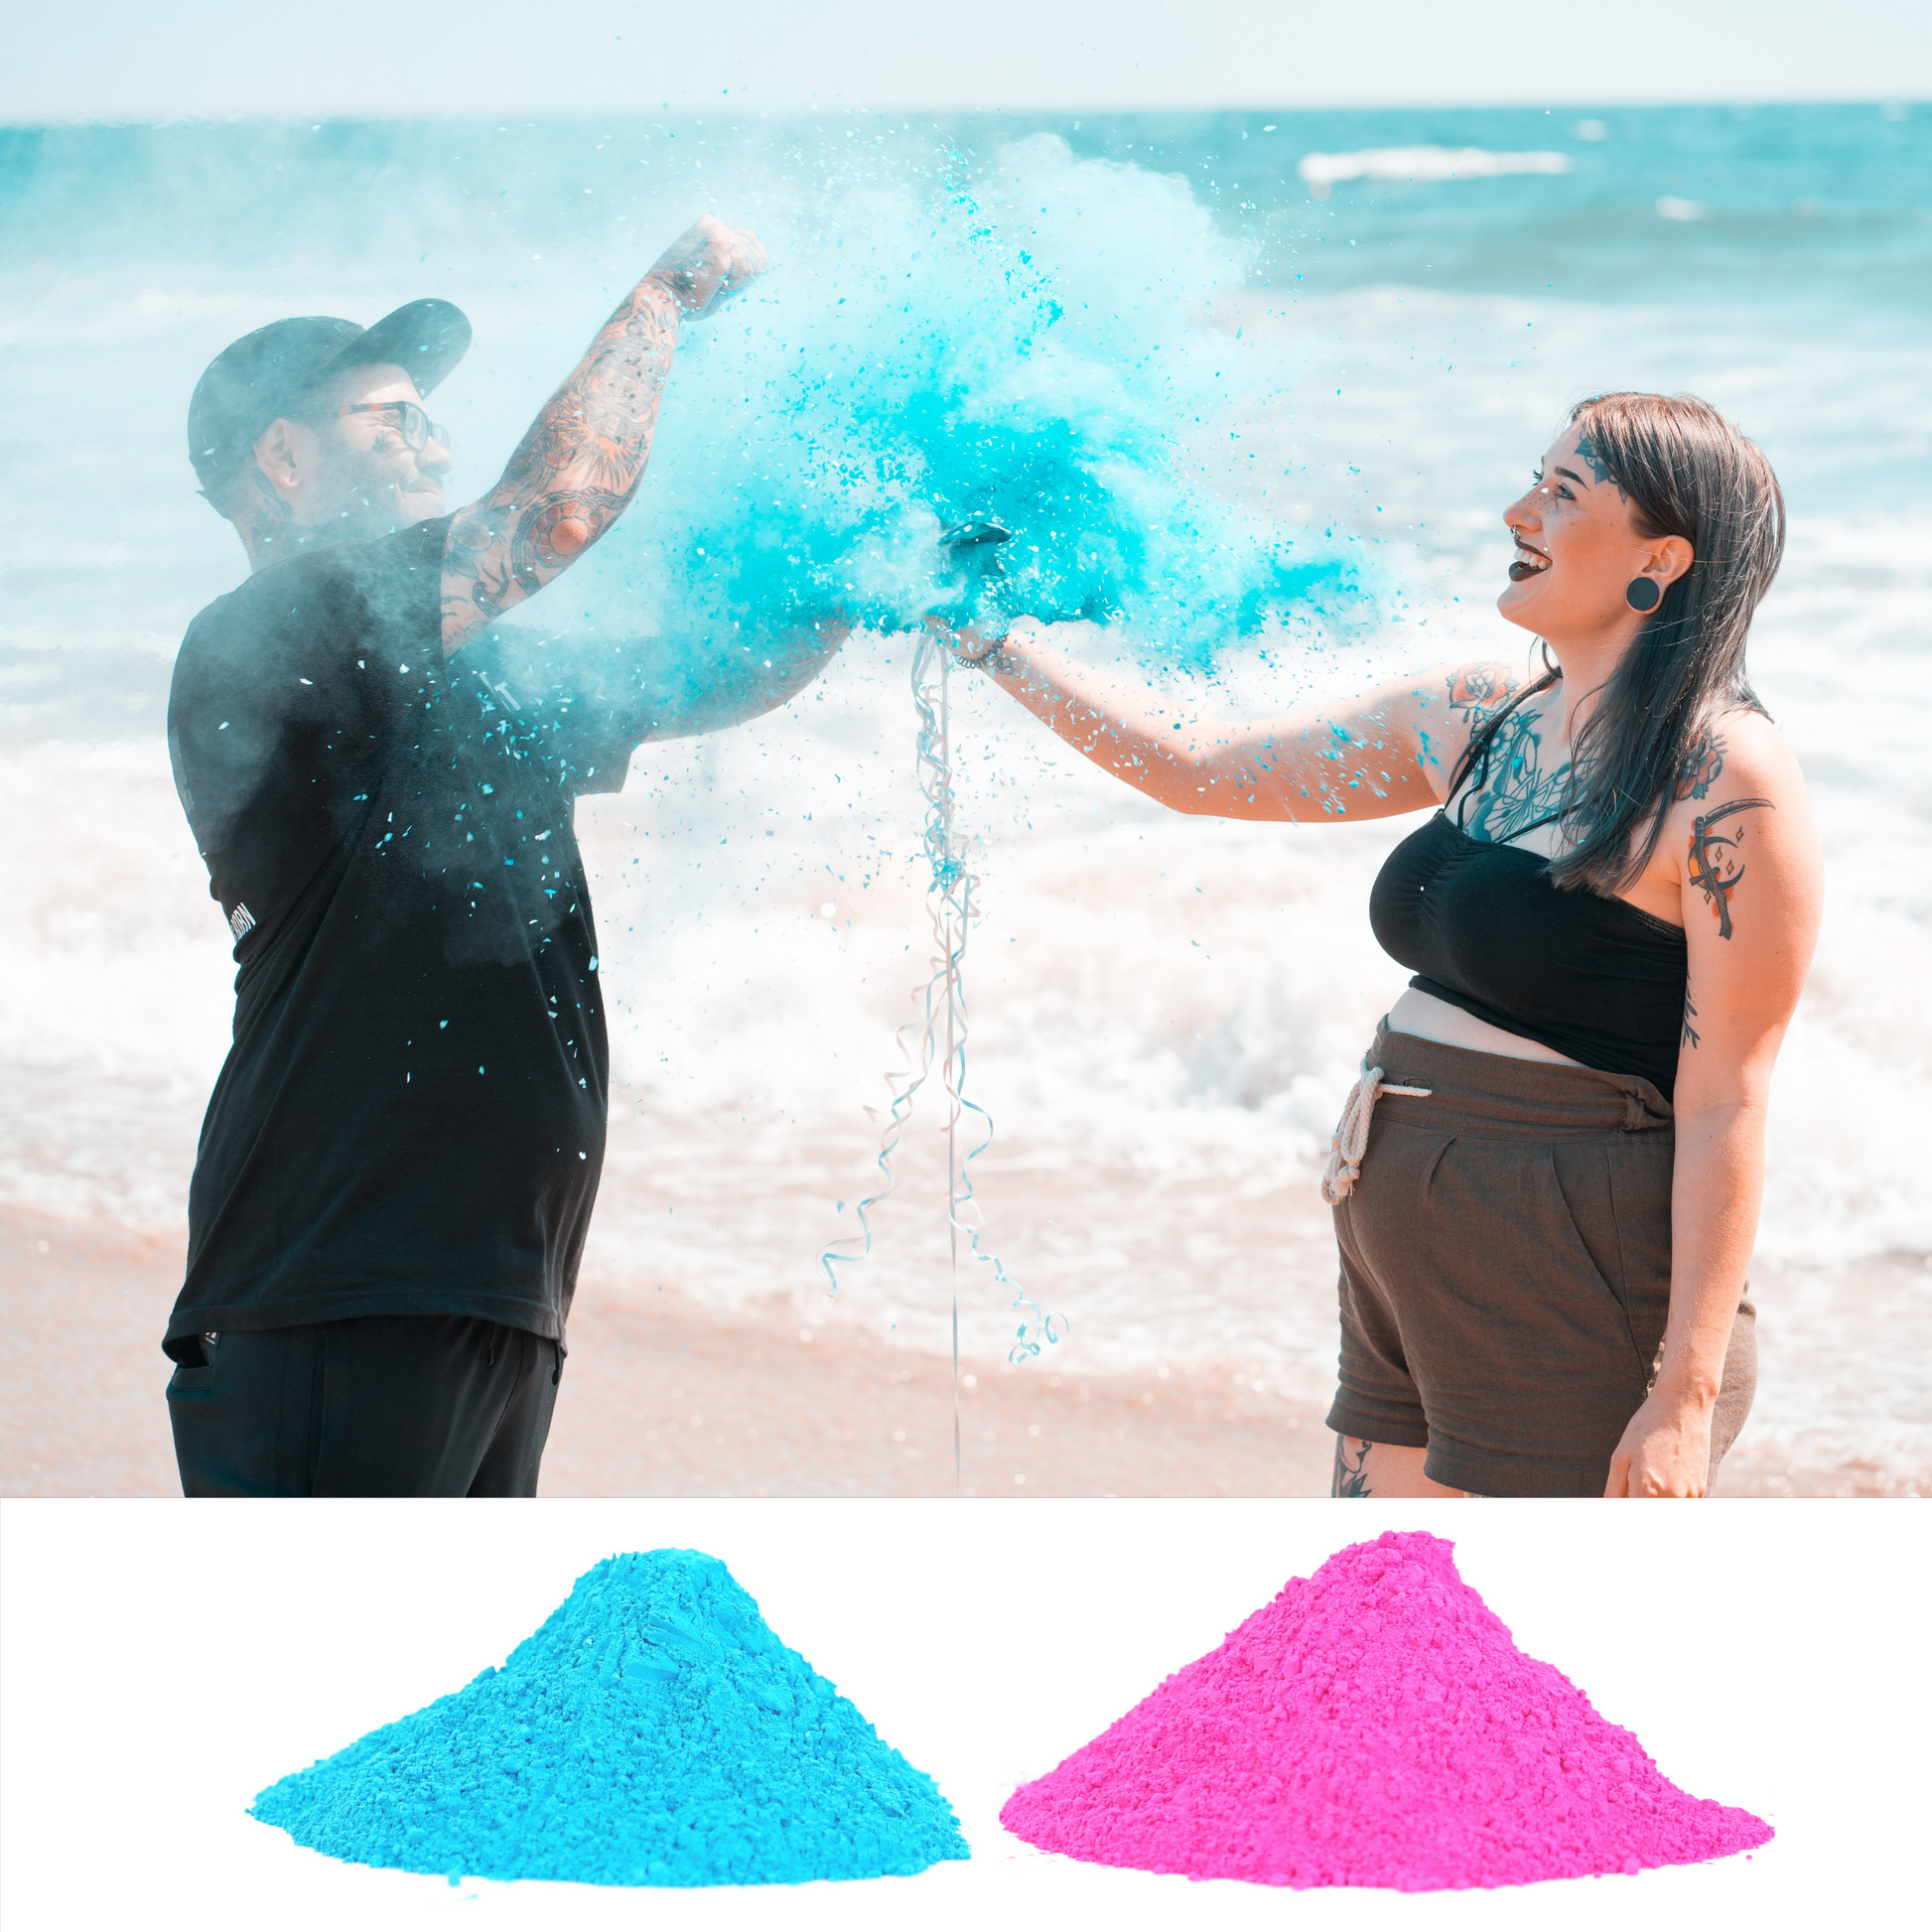 Gender Reveal Color Powder